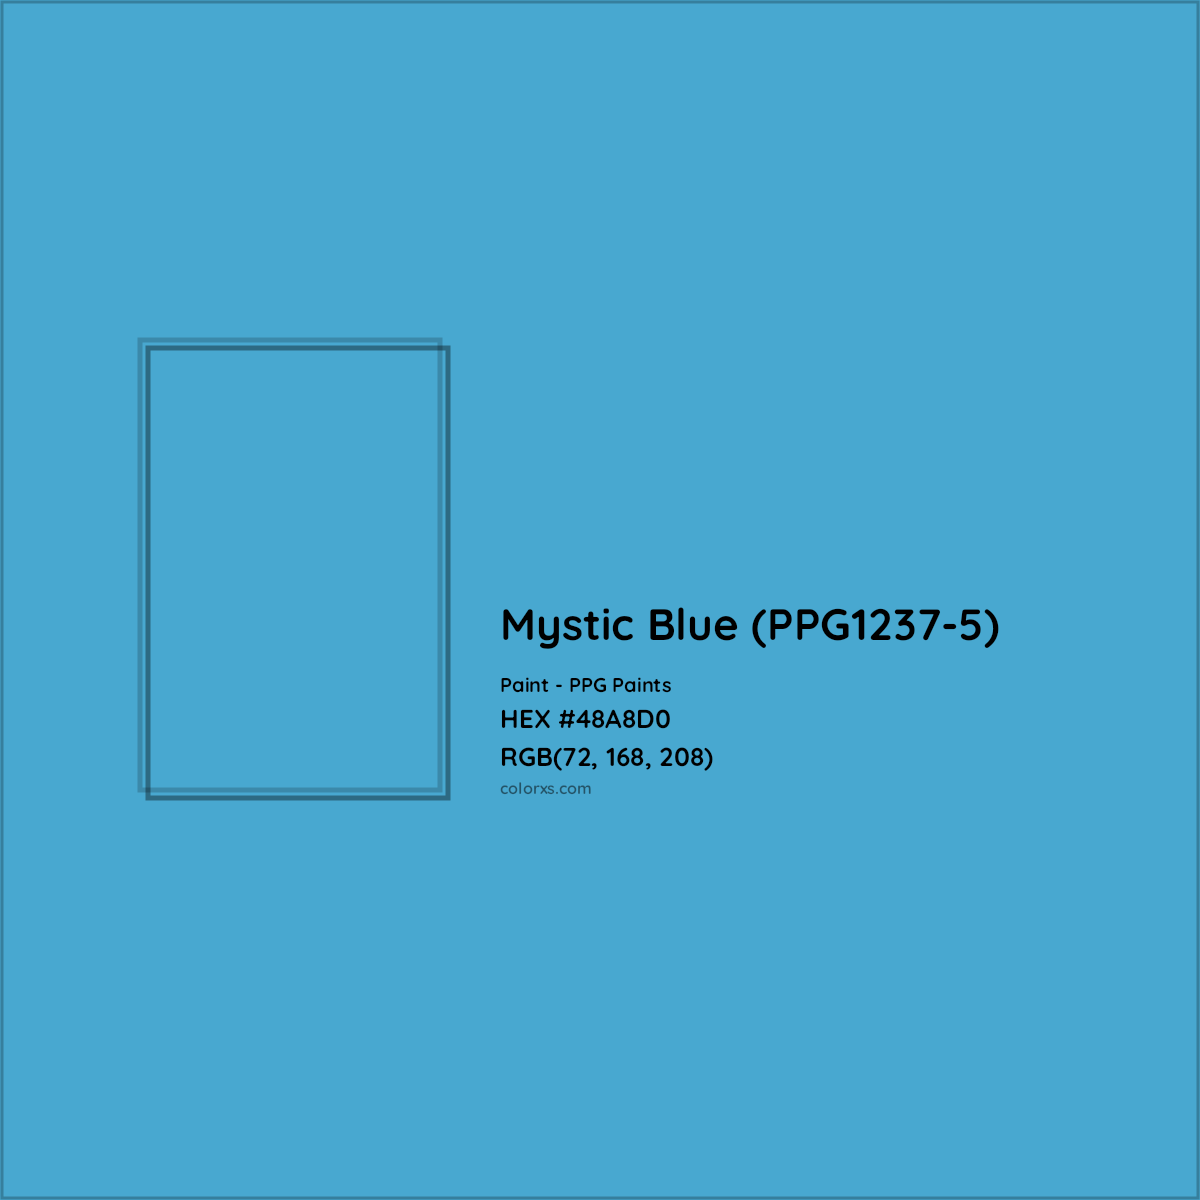 HEX #48A8D0 Mystic Blue (PPG1237-5) Paint PPG Paints - Color Code